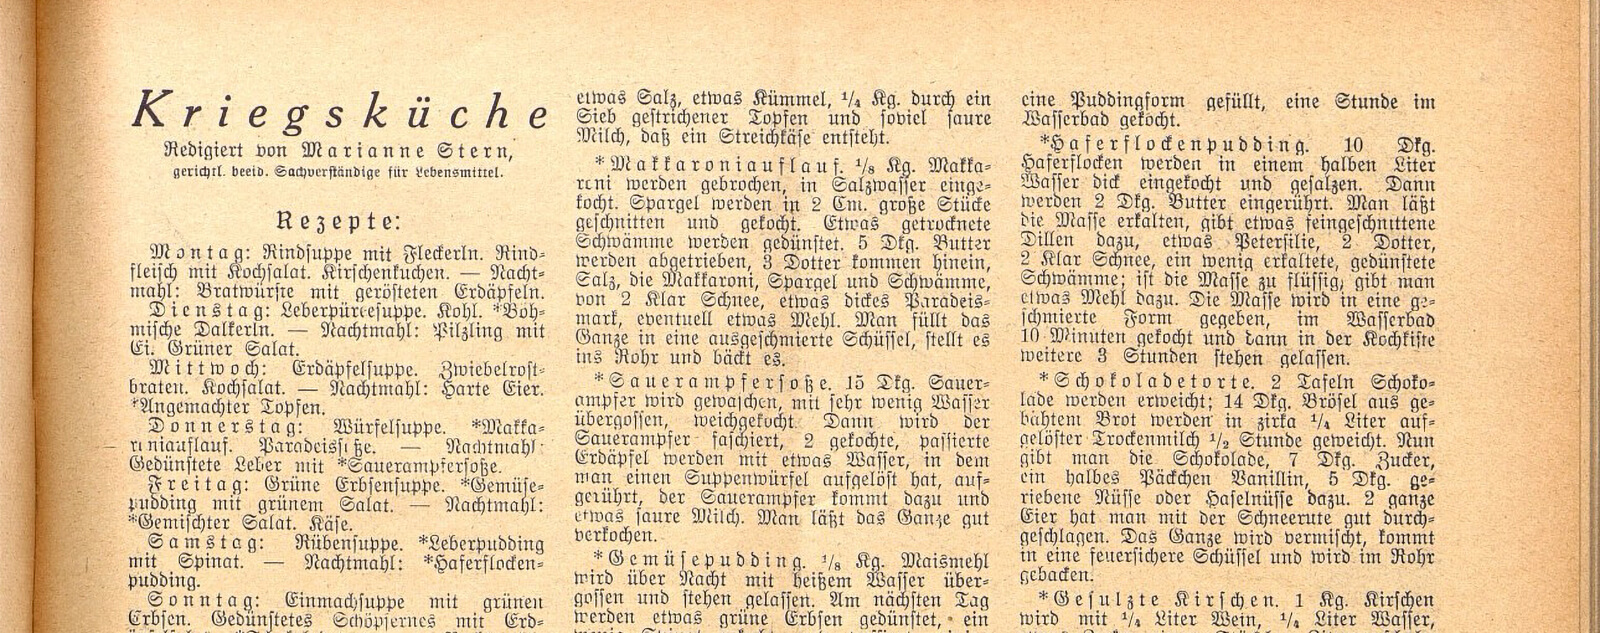 Haferrezept aus der Kriegsküche, in: Das Blatt der Hausfrau, 11. Juni 1916, ÖNB (Anno) 